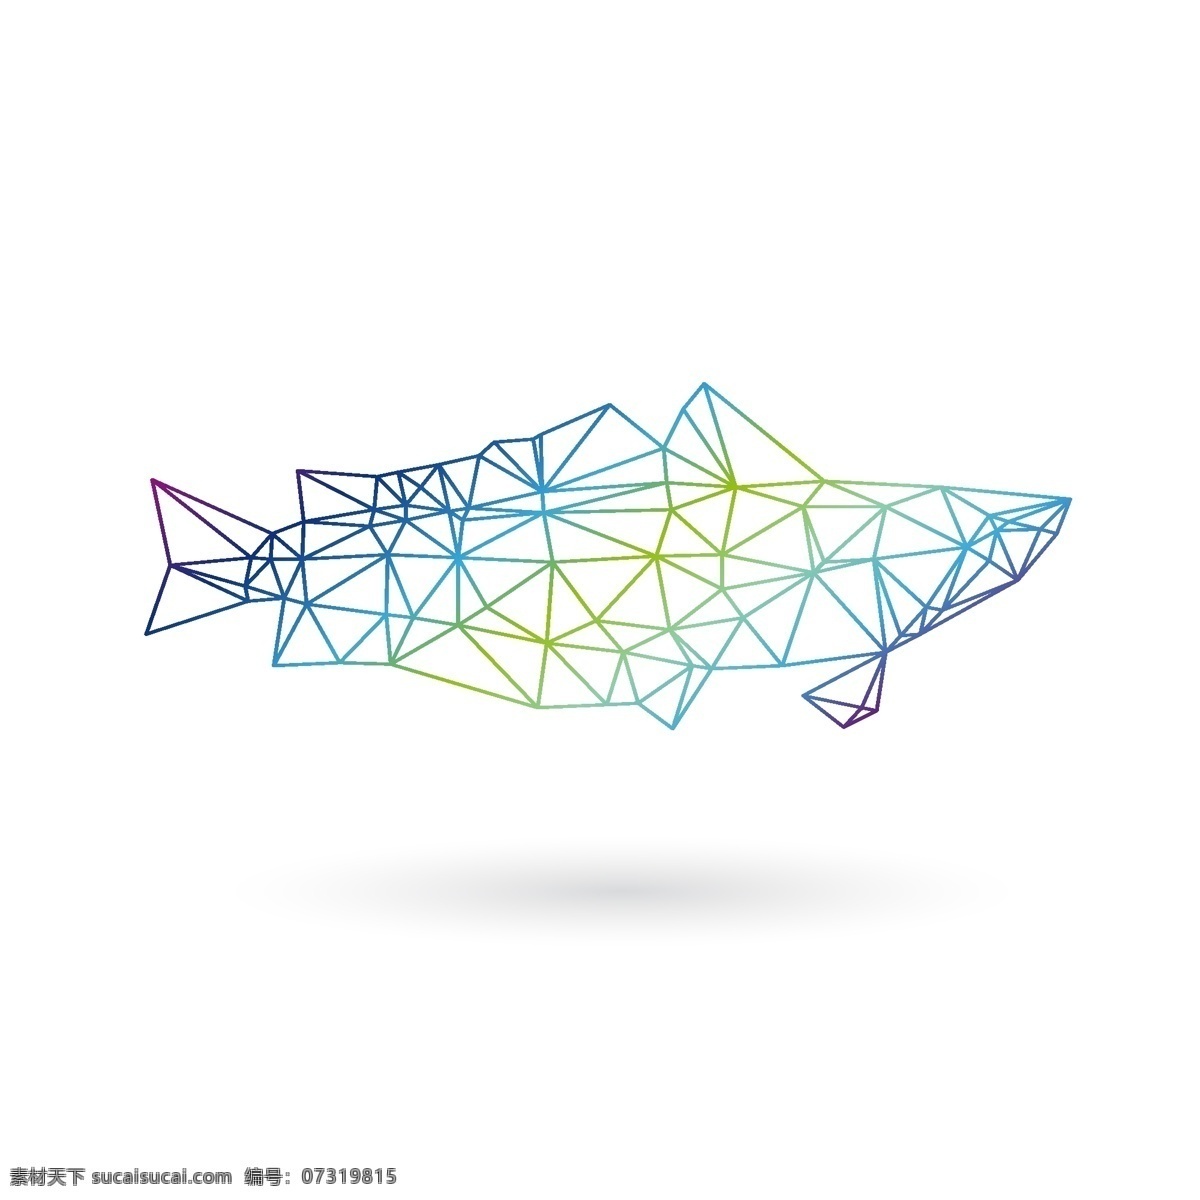 鱼图标 动物 鱼 鱼图形 手绘 创意鱼图案 logo标识 图标 矢量素材 标志图标 网页小图标